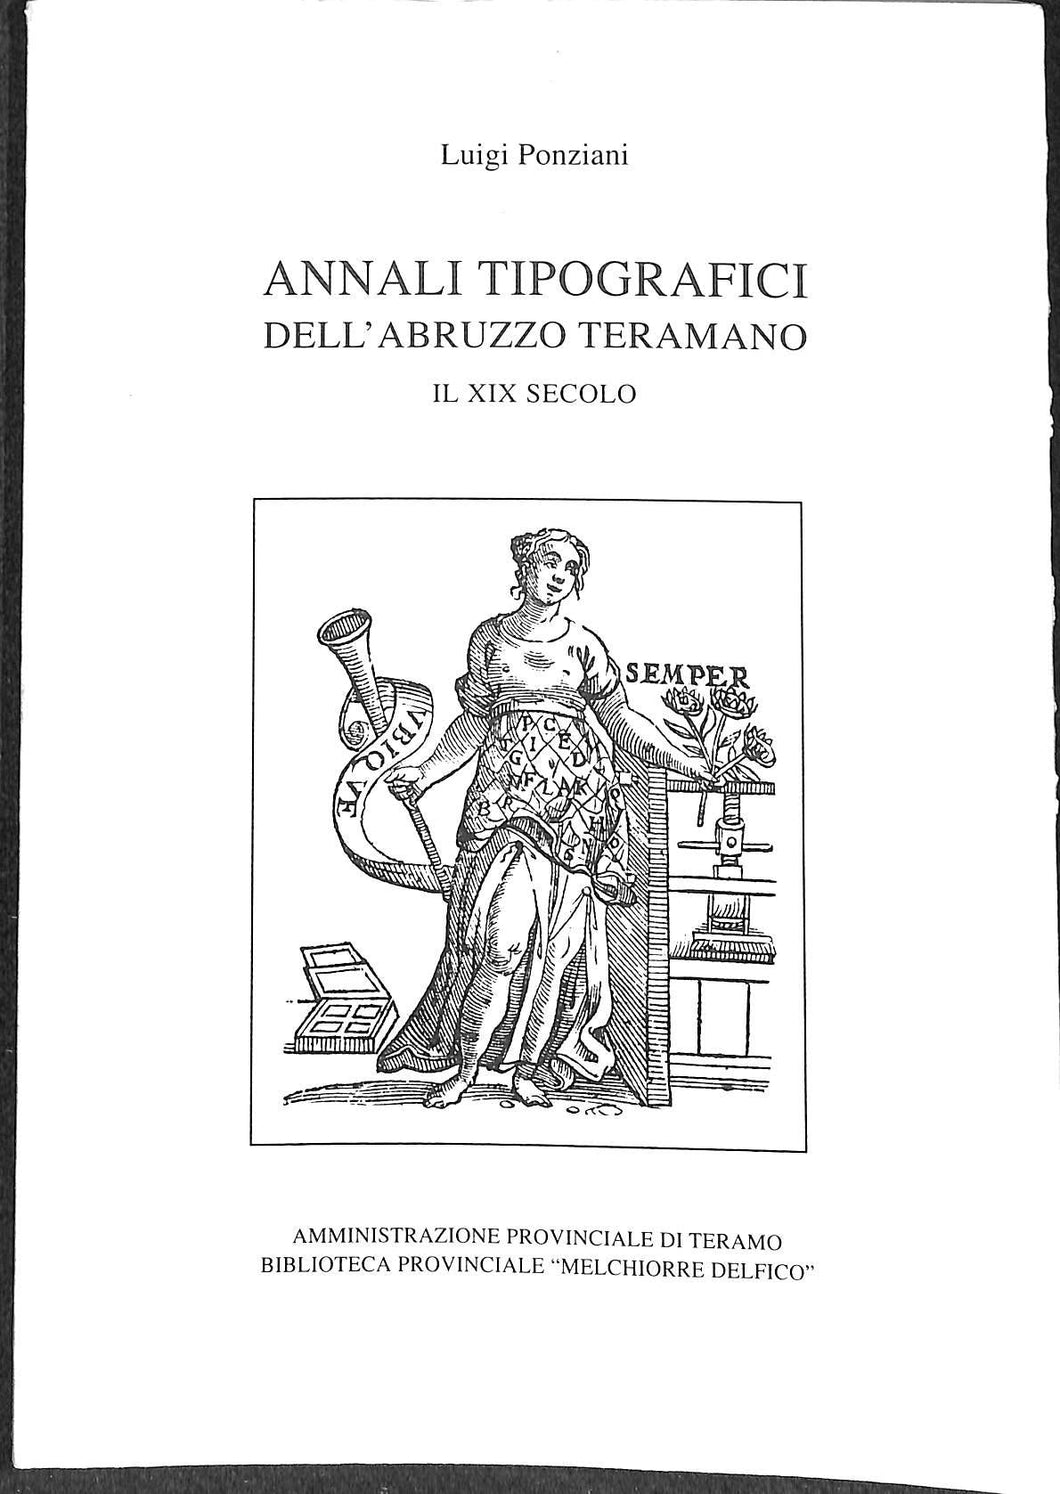 (Abruzzo ) Annali tipografici dell'Abruzzo teramano : il 19. secolo / Luigi Ponziani